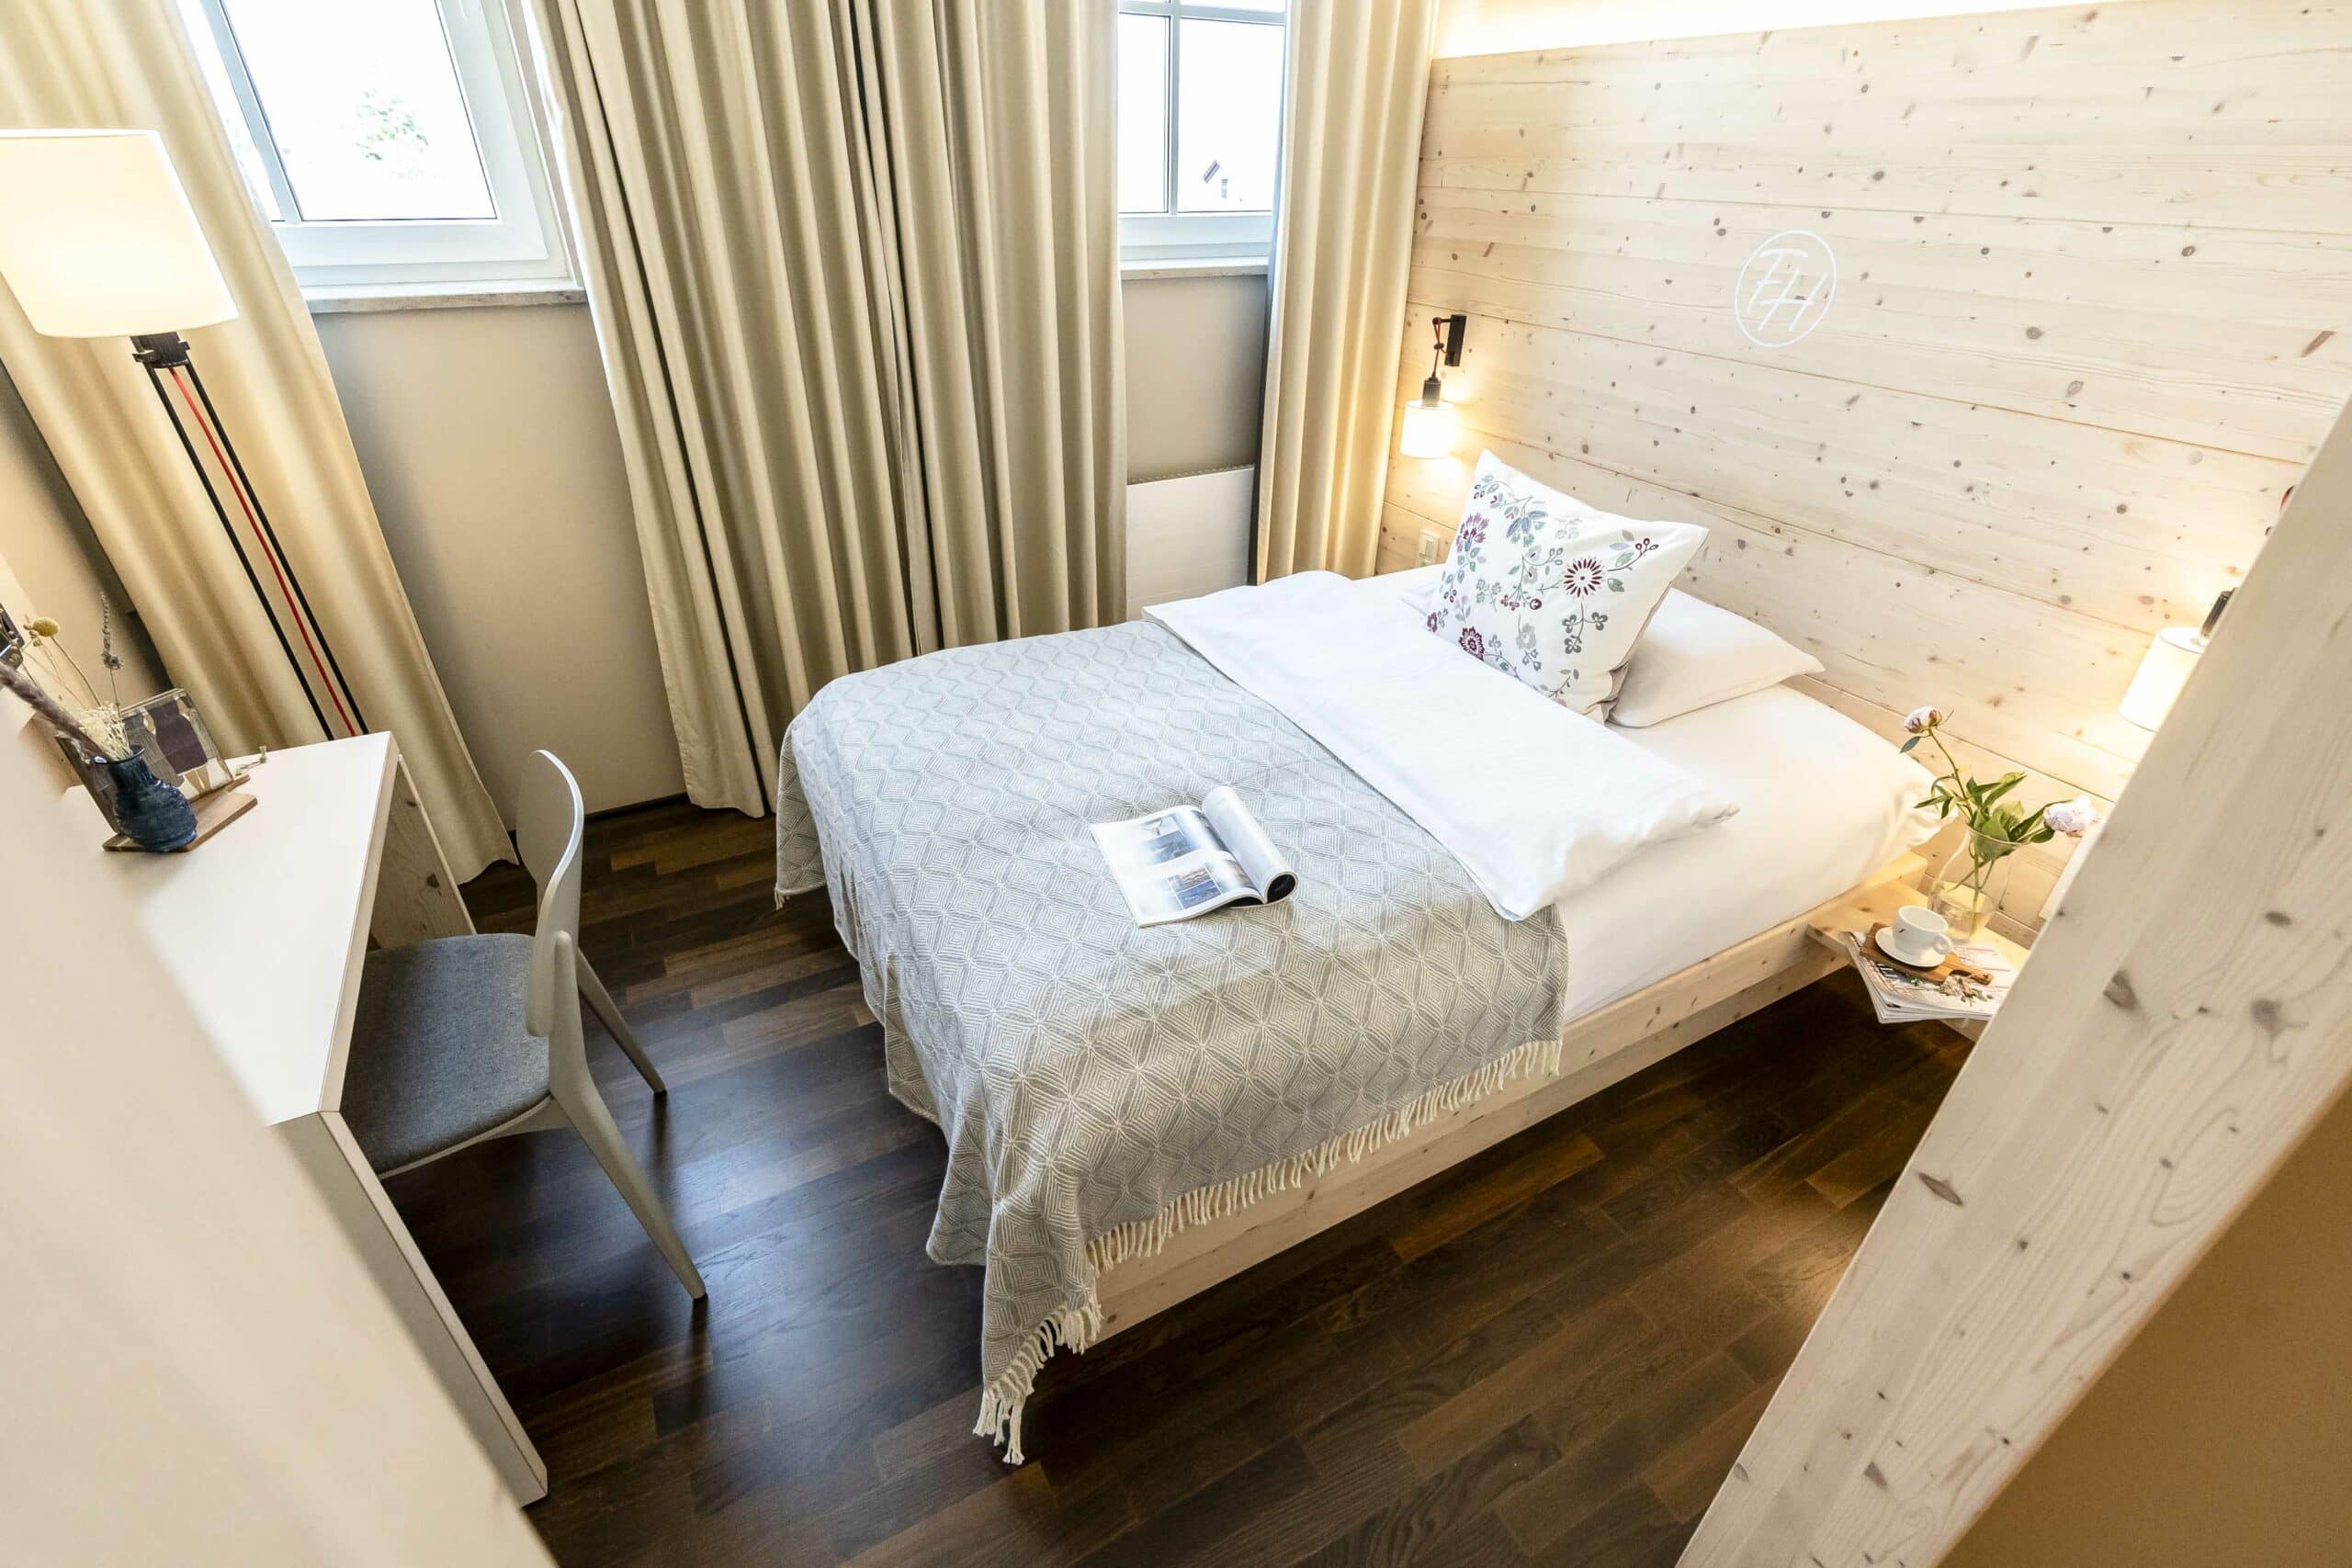 Deluxe Comfort single room bed